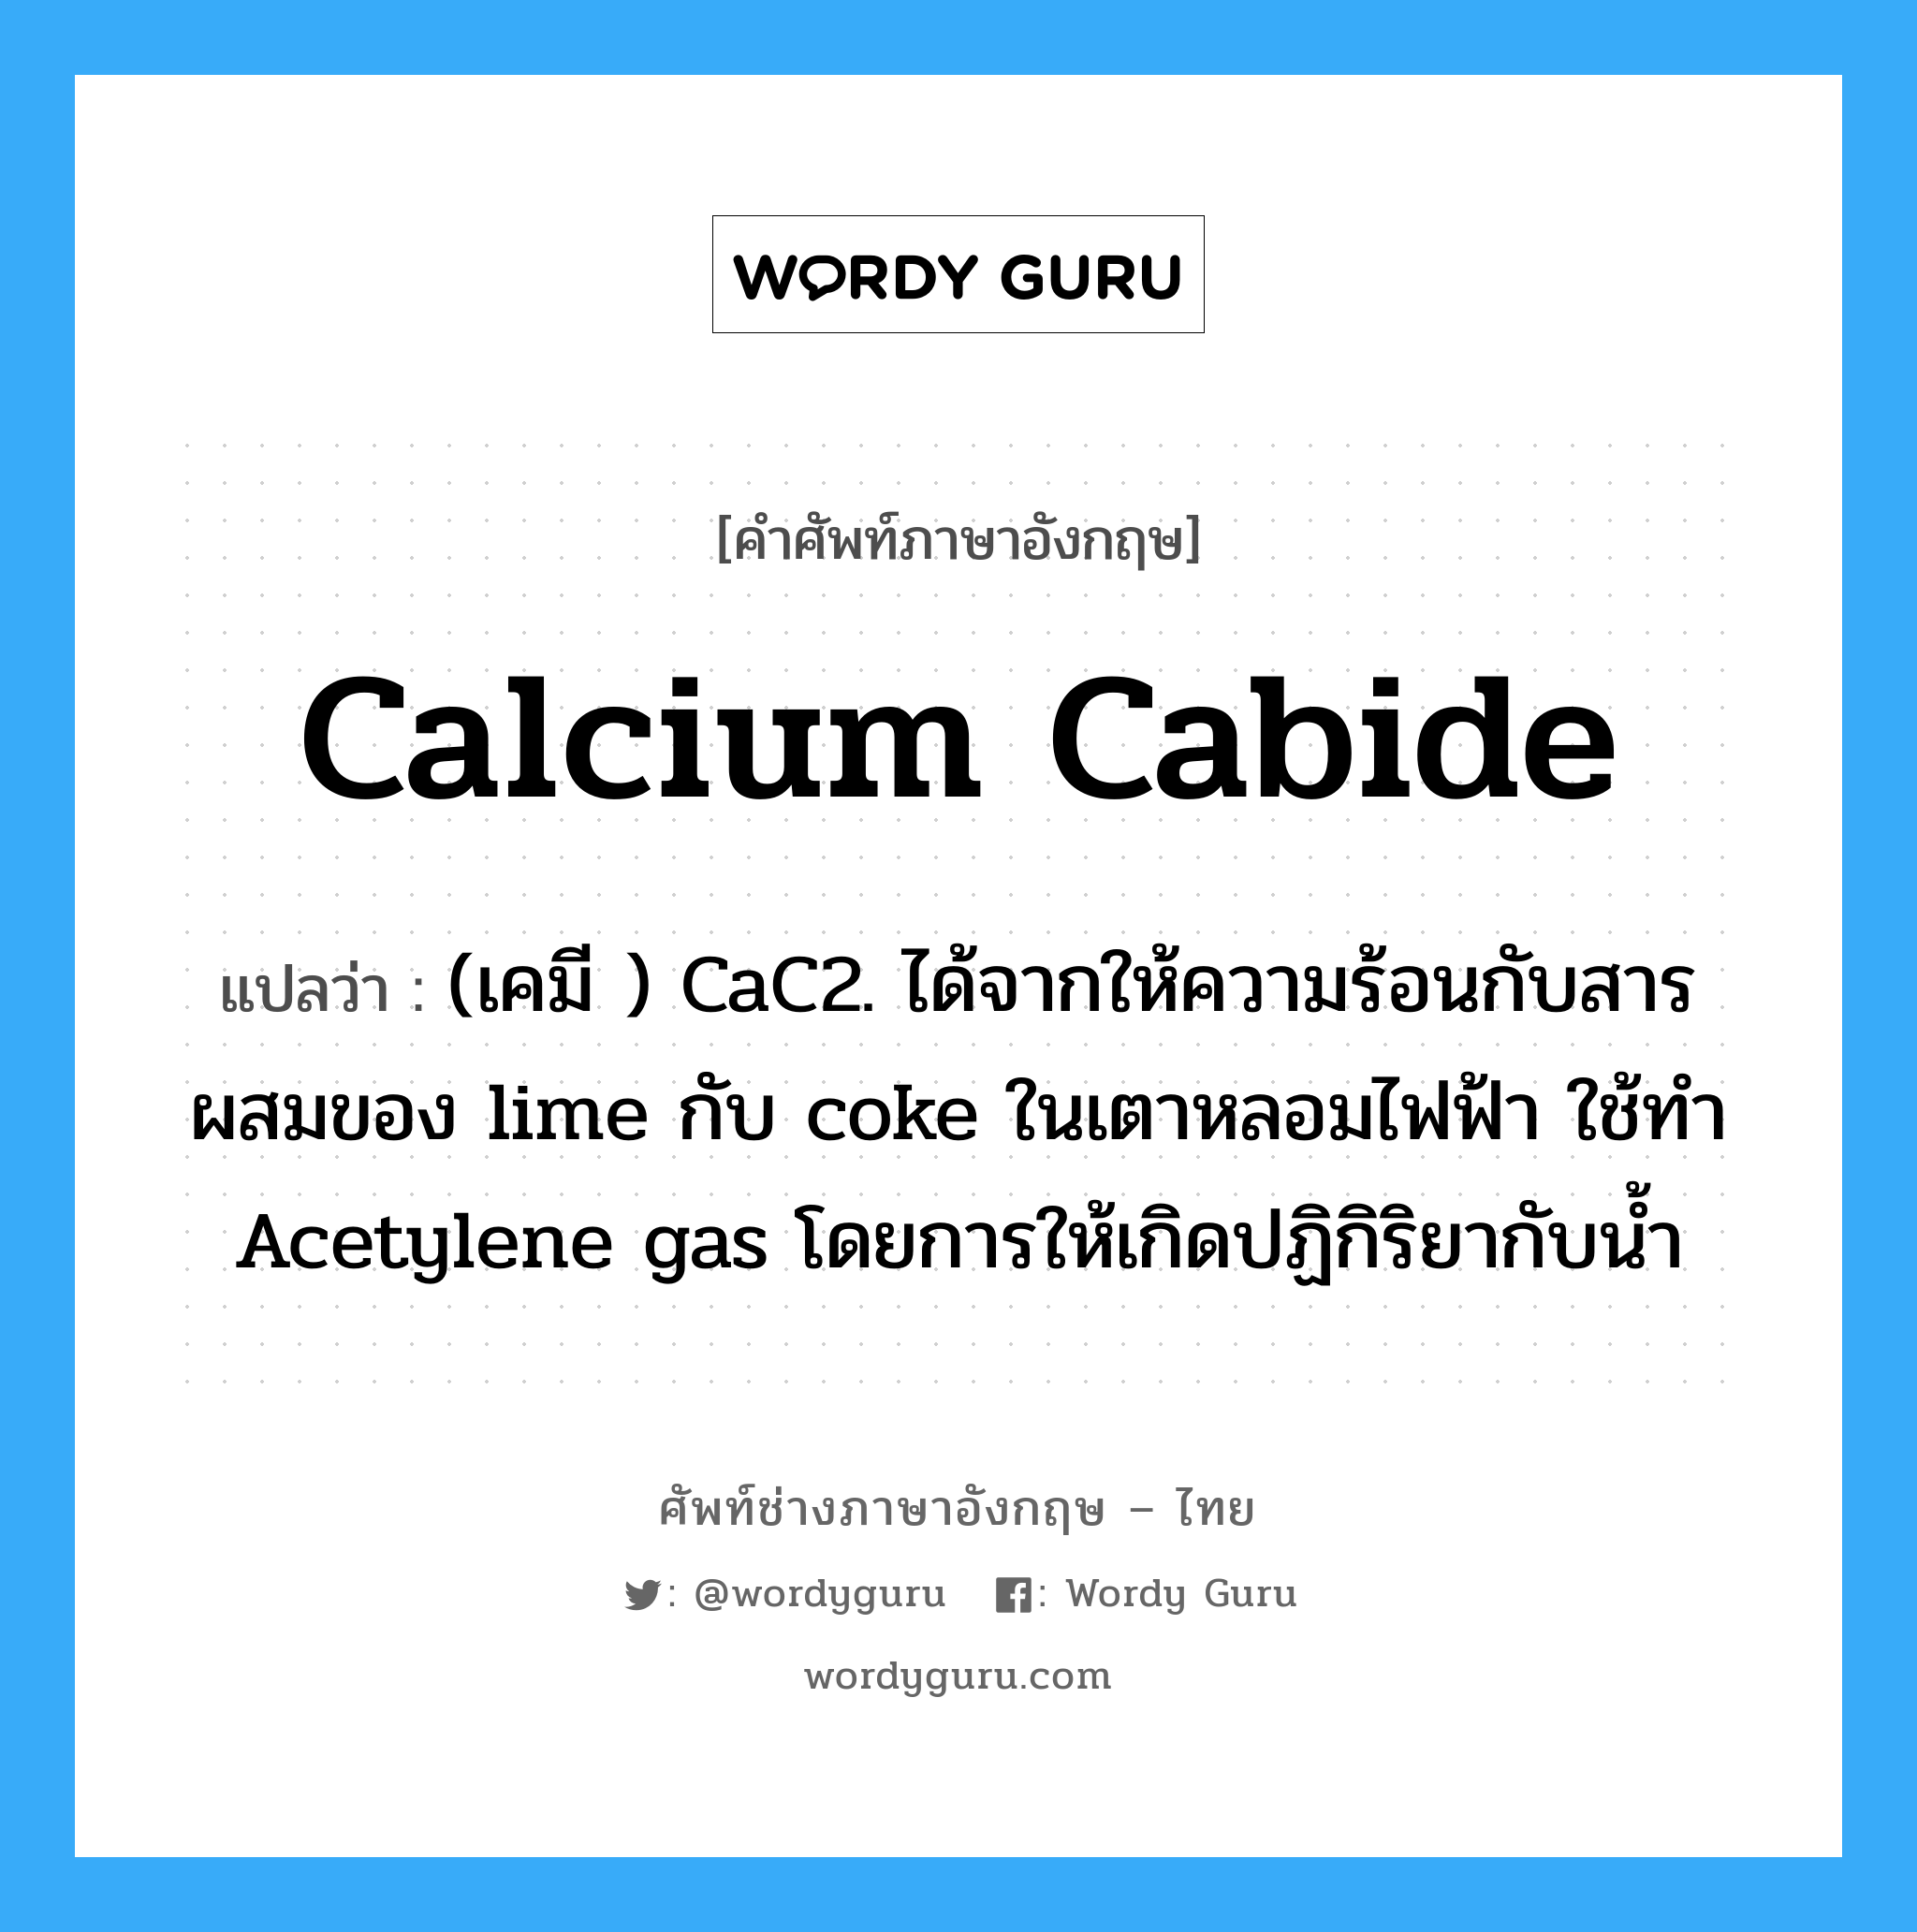 (เคมี ) CaC2. ได้จากให้ความร้อนกับสารผสมของ lime กับ coke ในเตาหลอมไฟฟ้า ใช้ทำ Acetylene gas โดยการให้เกิดปฏิกิริยากับน้ำ ภาษาอังกฤษ?, คำศัพท์ช่างภาษาอังกฤษ - ไทย (เคมี ) CaC2. ได้จากให้ความร้อนกับสารผสมของ lime กับ coke ในเตาหลอมไฟฟ้า ใช้ทำ Acetylene gas โดยการให้เกิดปฏิกิริยากับน้ำ คำศัพท์ภาษาอังกฤษ (เคมี ) CaC2. ได้จากให้ความร้อนกับสารผสมของ lime กับ coke ในเตาหลอมไฟฟ้า ใช้ทำ Acetylene gas โดยการให้เกิดปฏิกิริยากับน้ำ แปลว่า calcium cabide